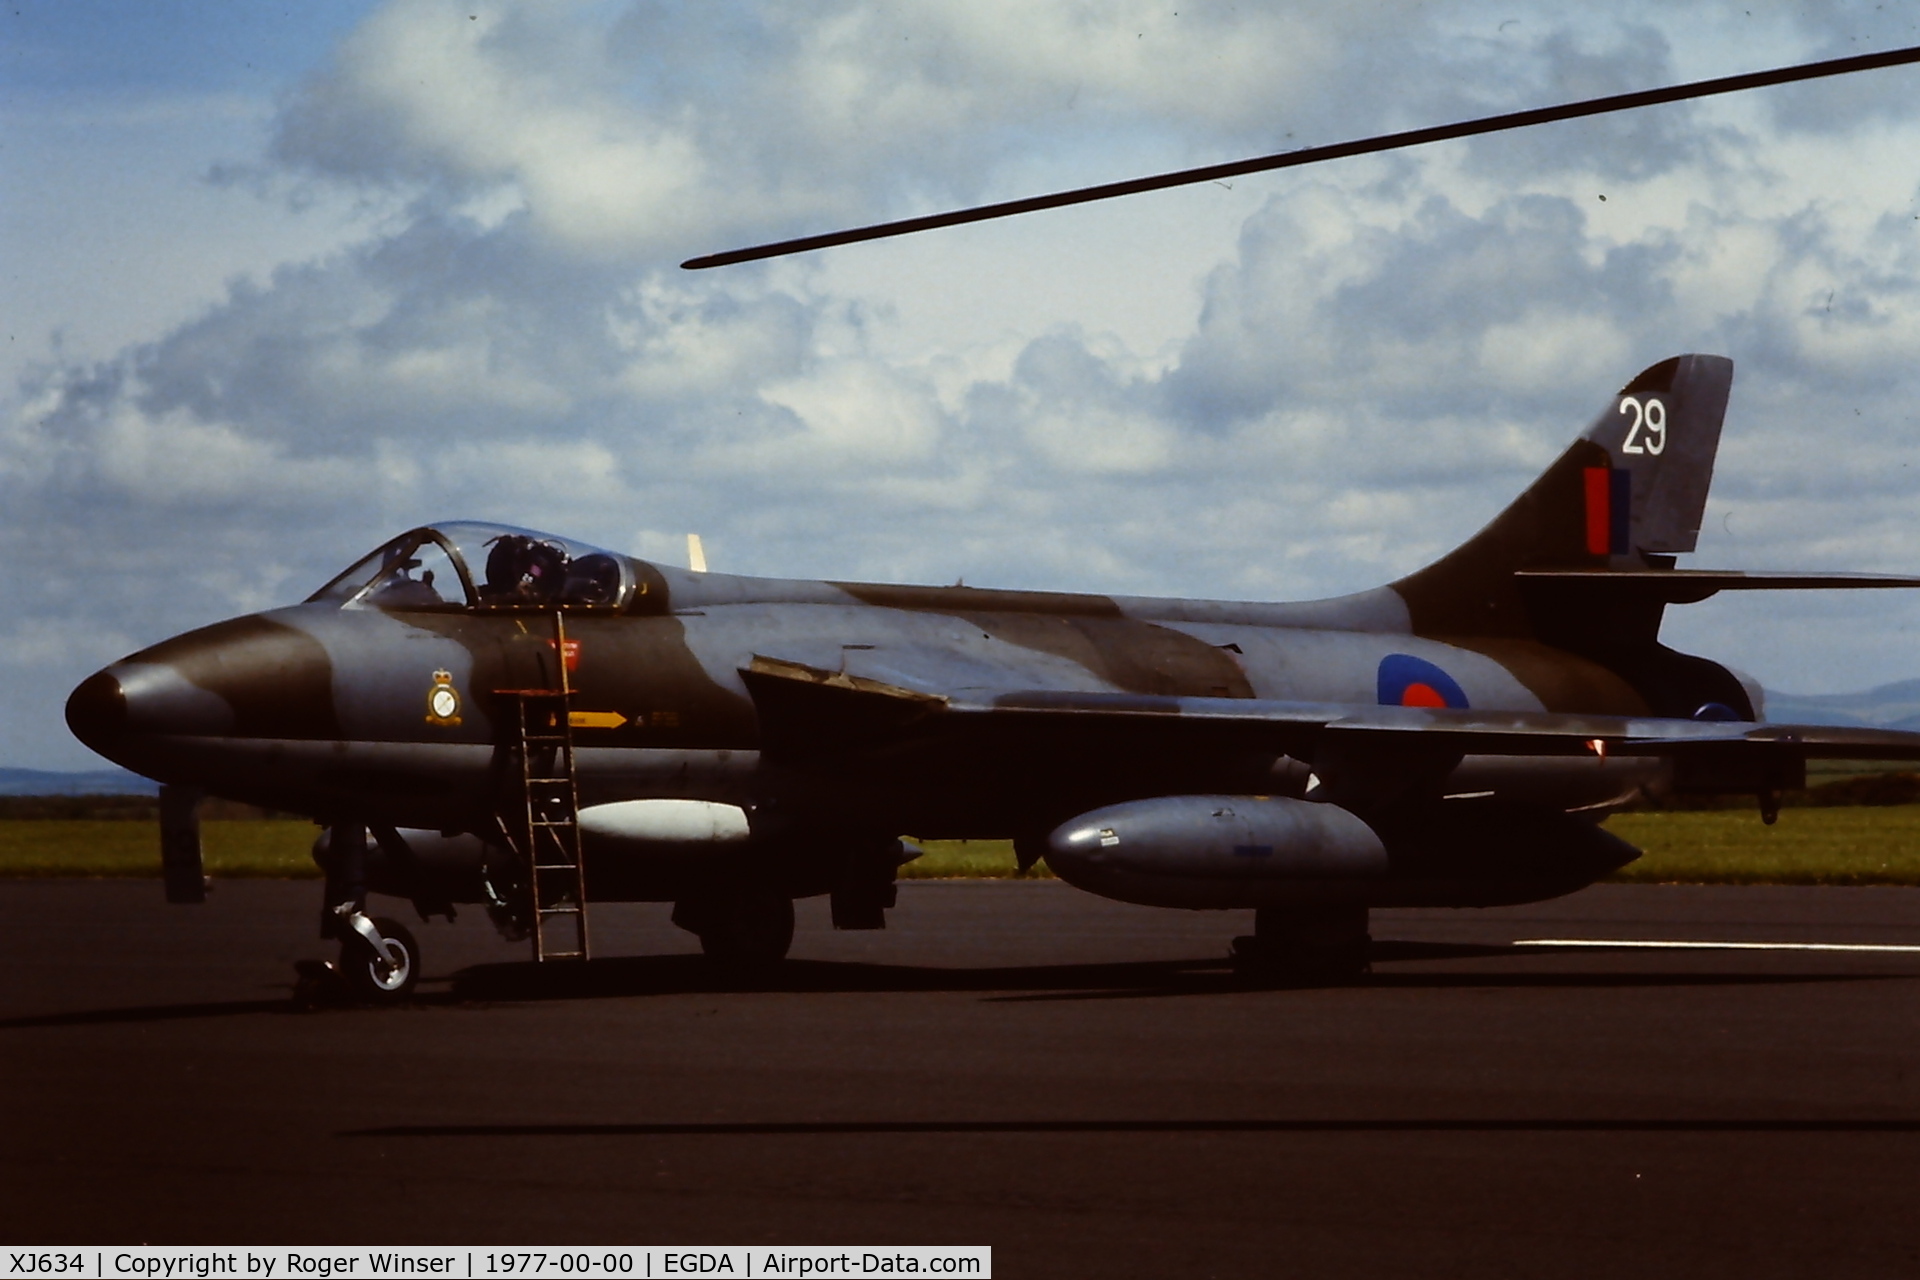 XJ634, 1956 Hawker Hunter F.6A C/N 41H/688051, 29 of (No1)TWU based at RAF Brawdy, Wales, UK in 1977. 